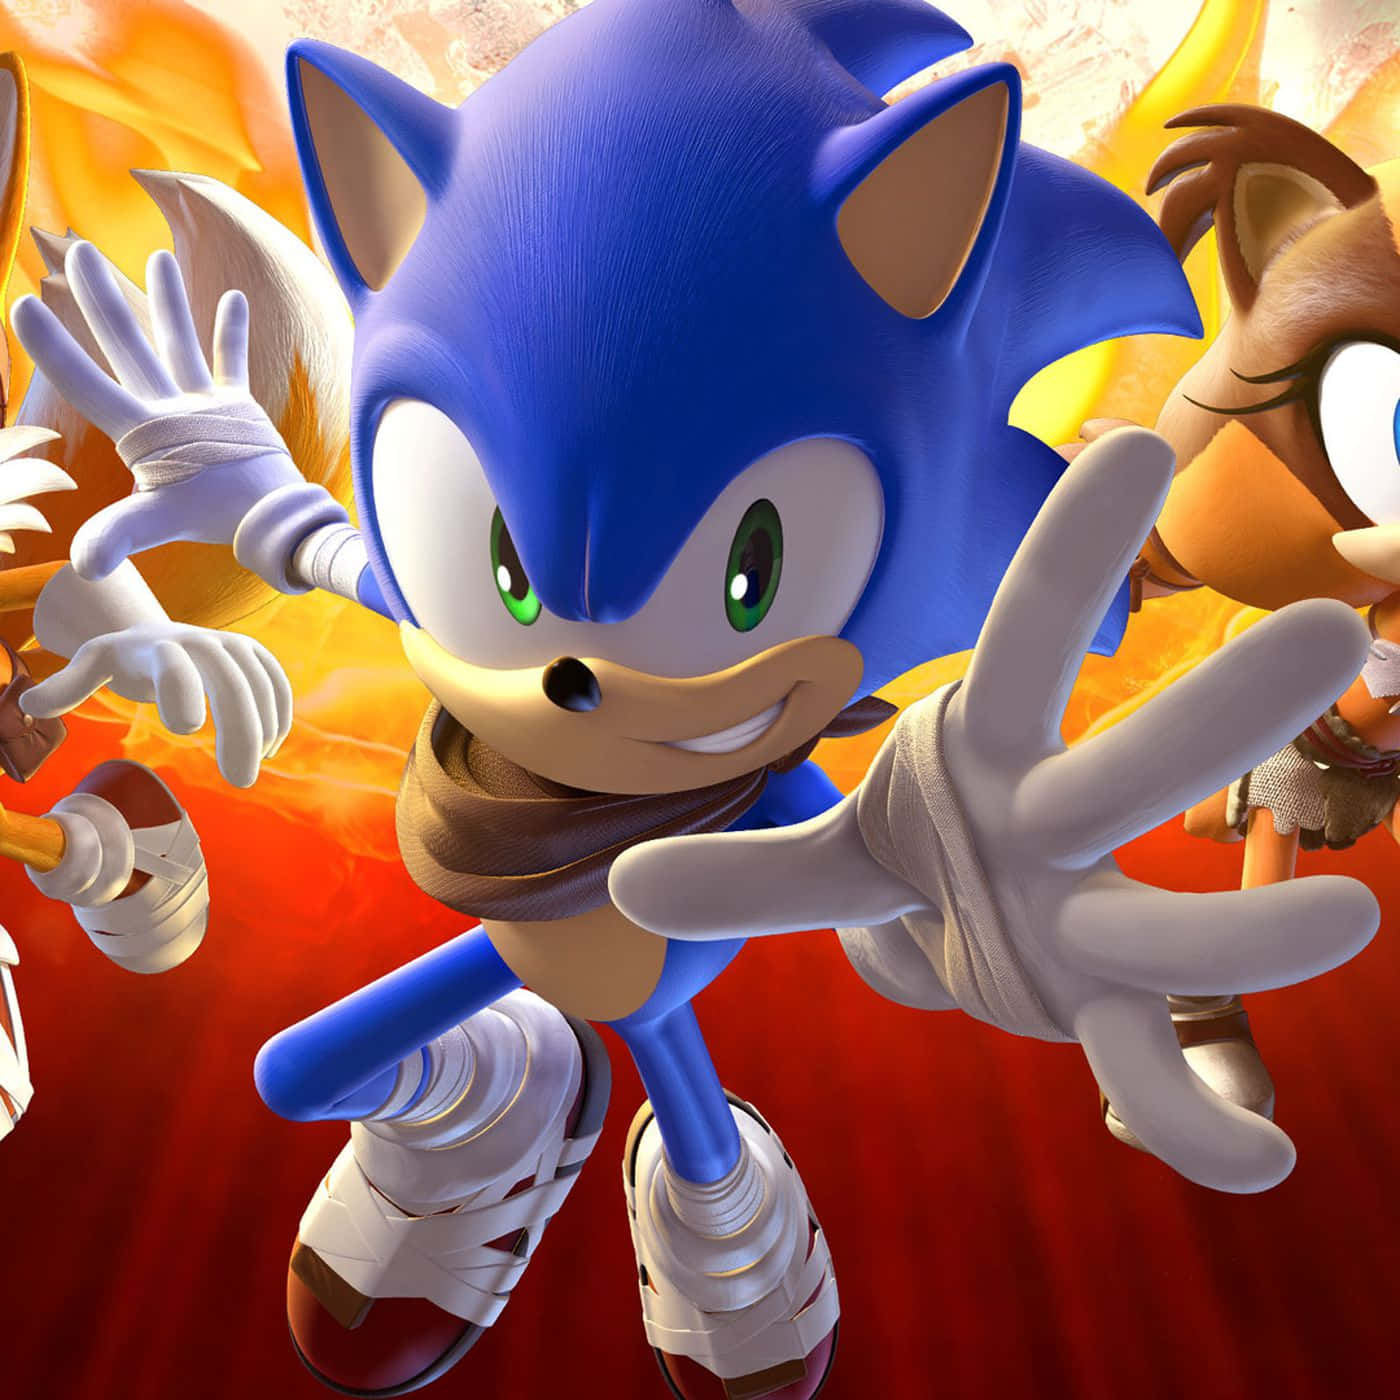 Sonicthe Hedgehog, Il Personaggio Iconico Dei Videogiochi